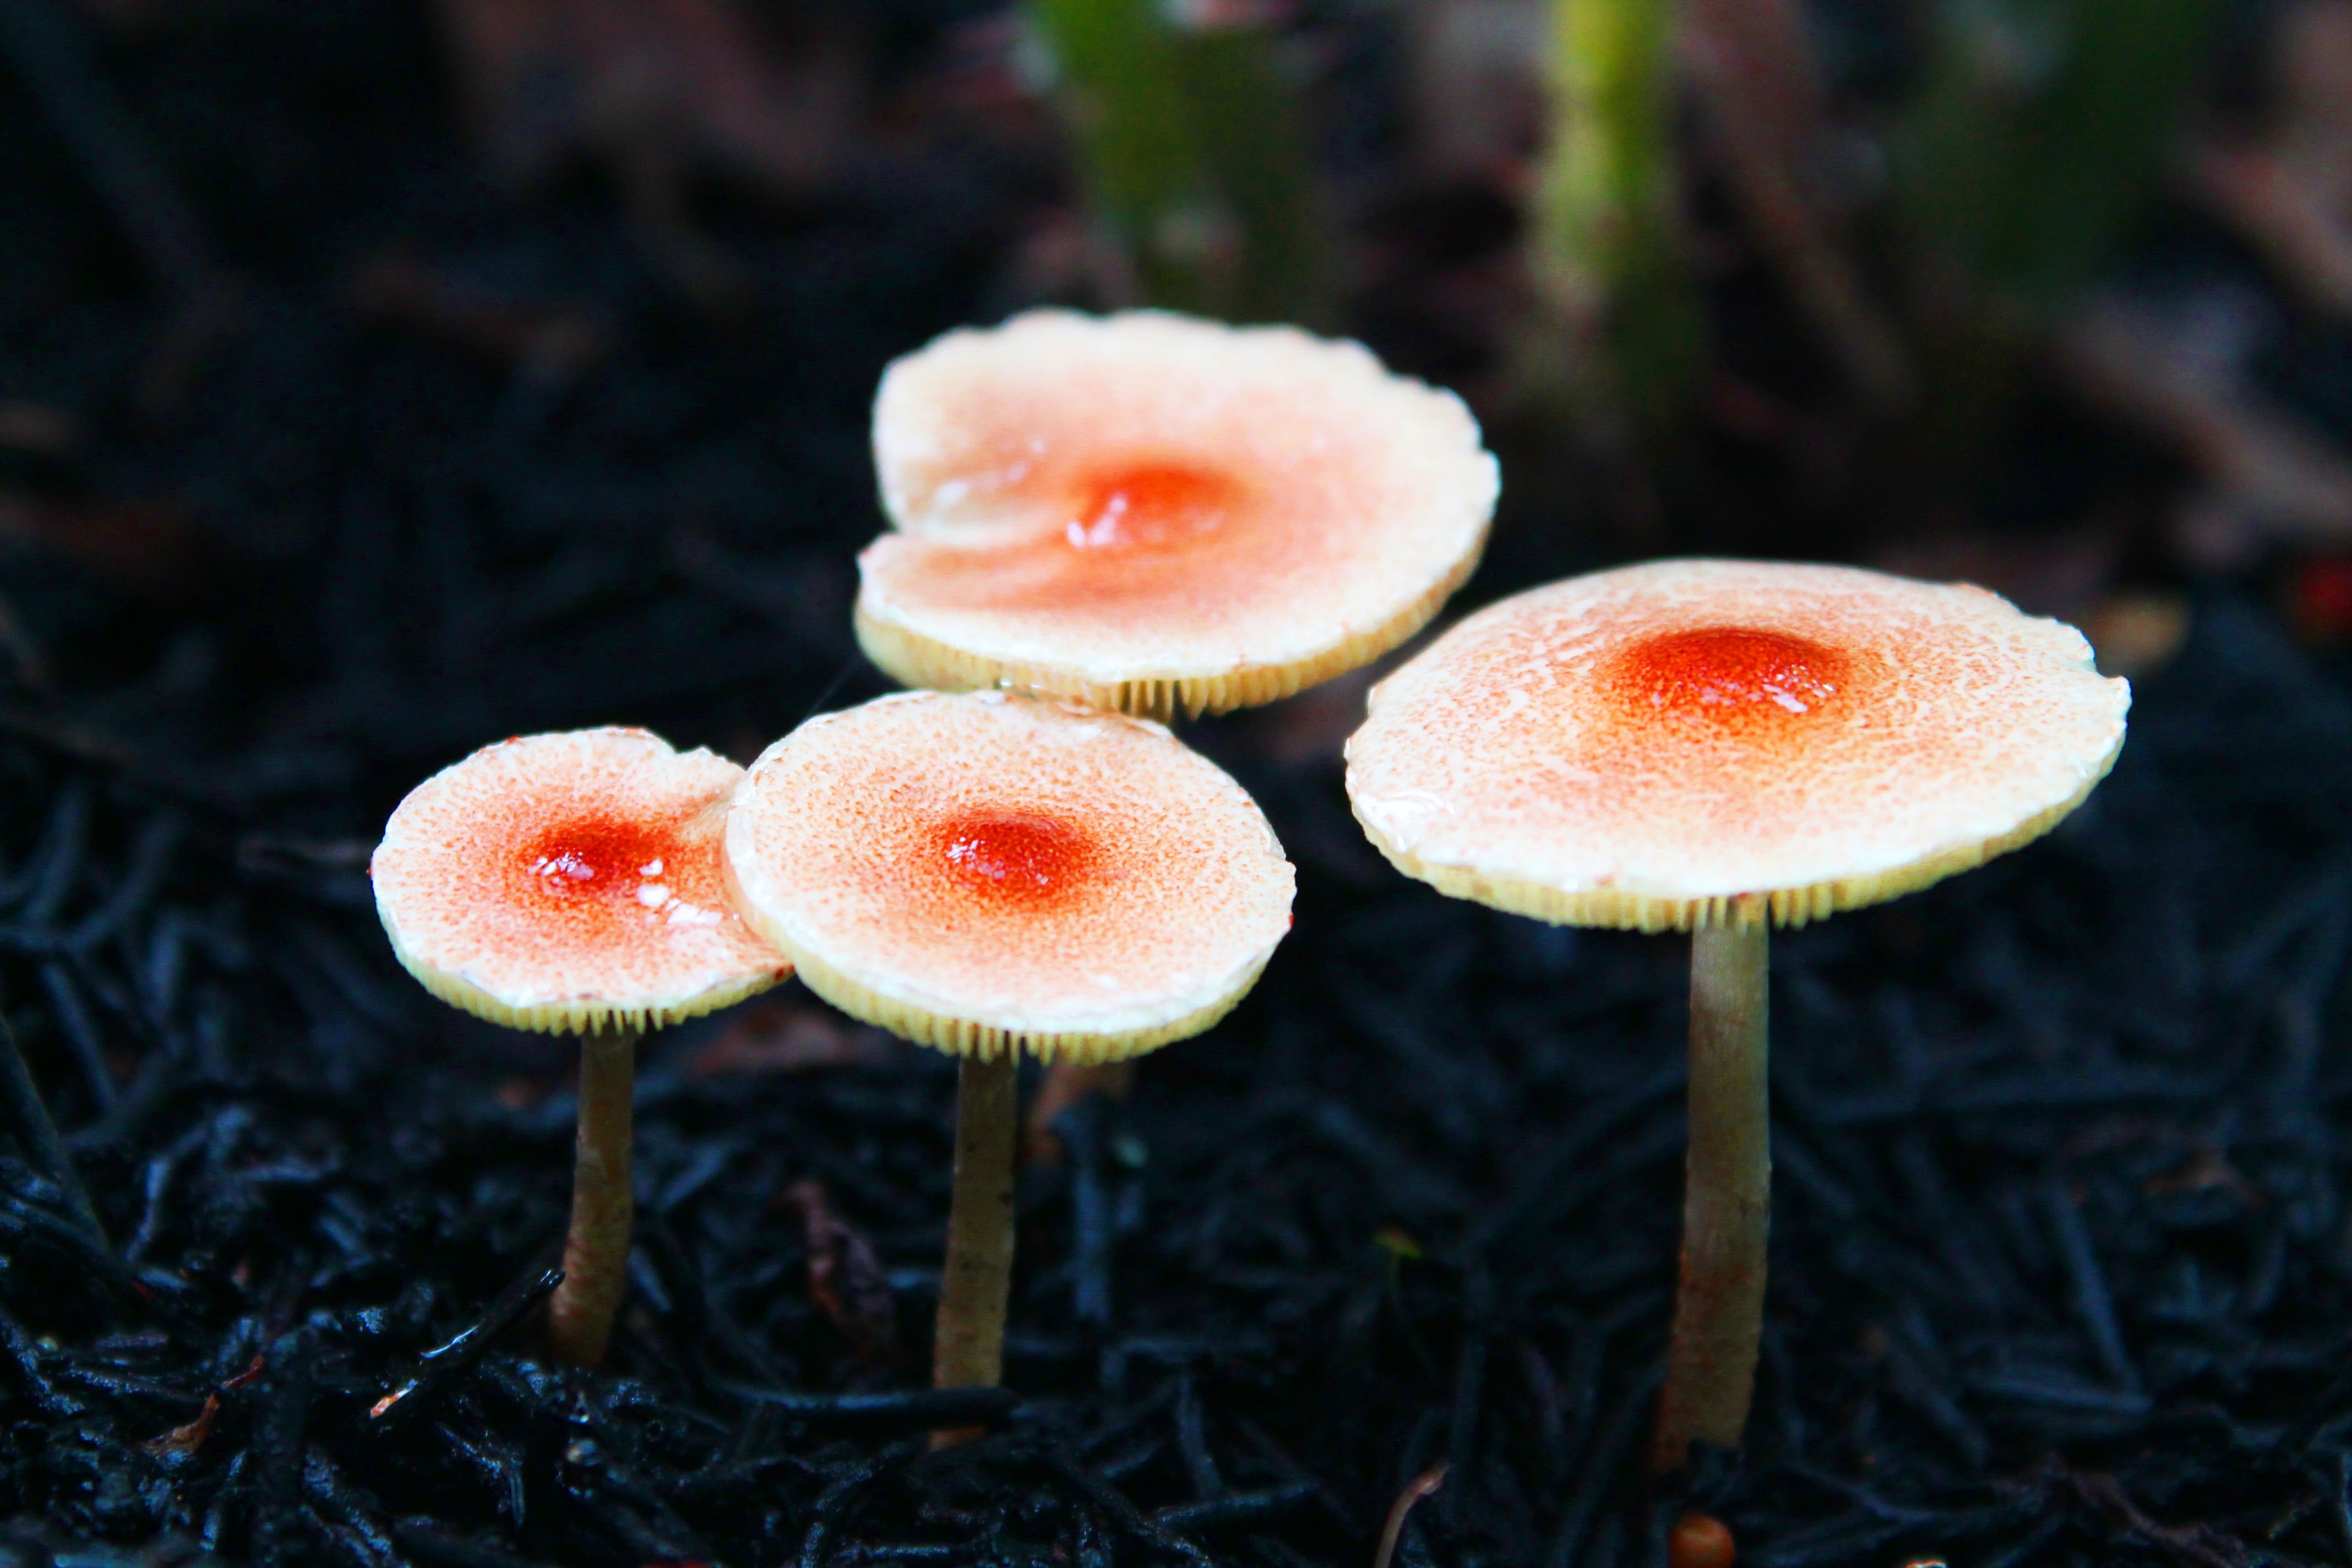 4 white and orange mushrooms